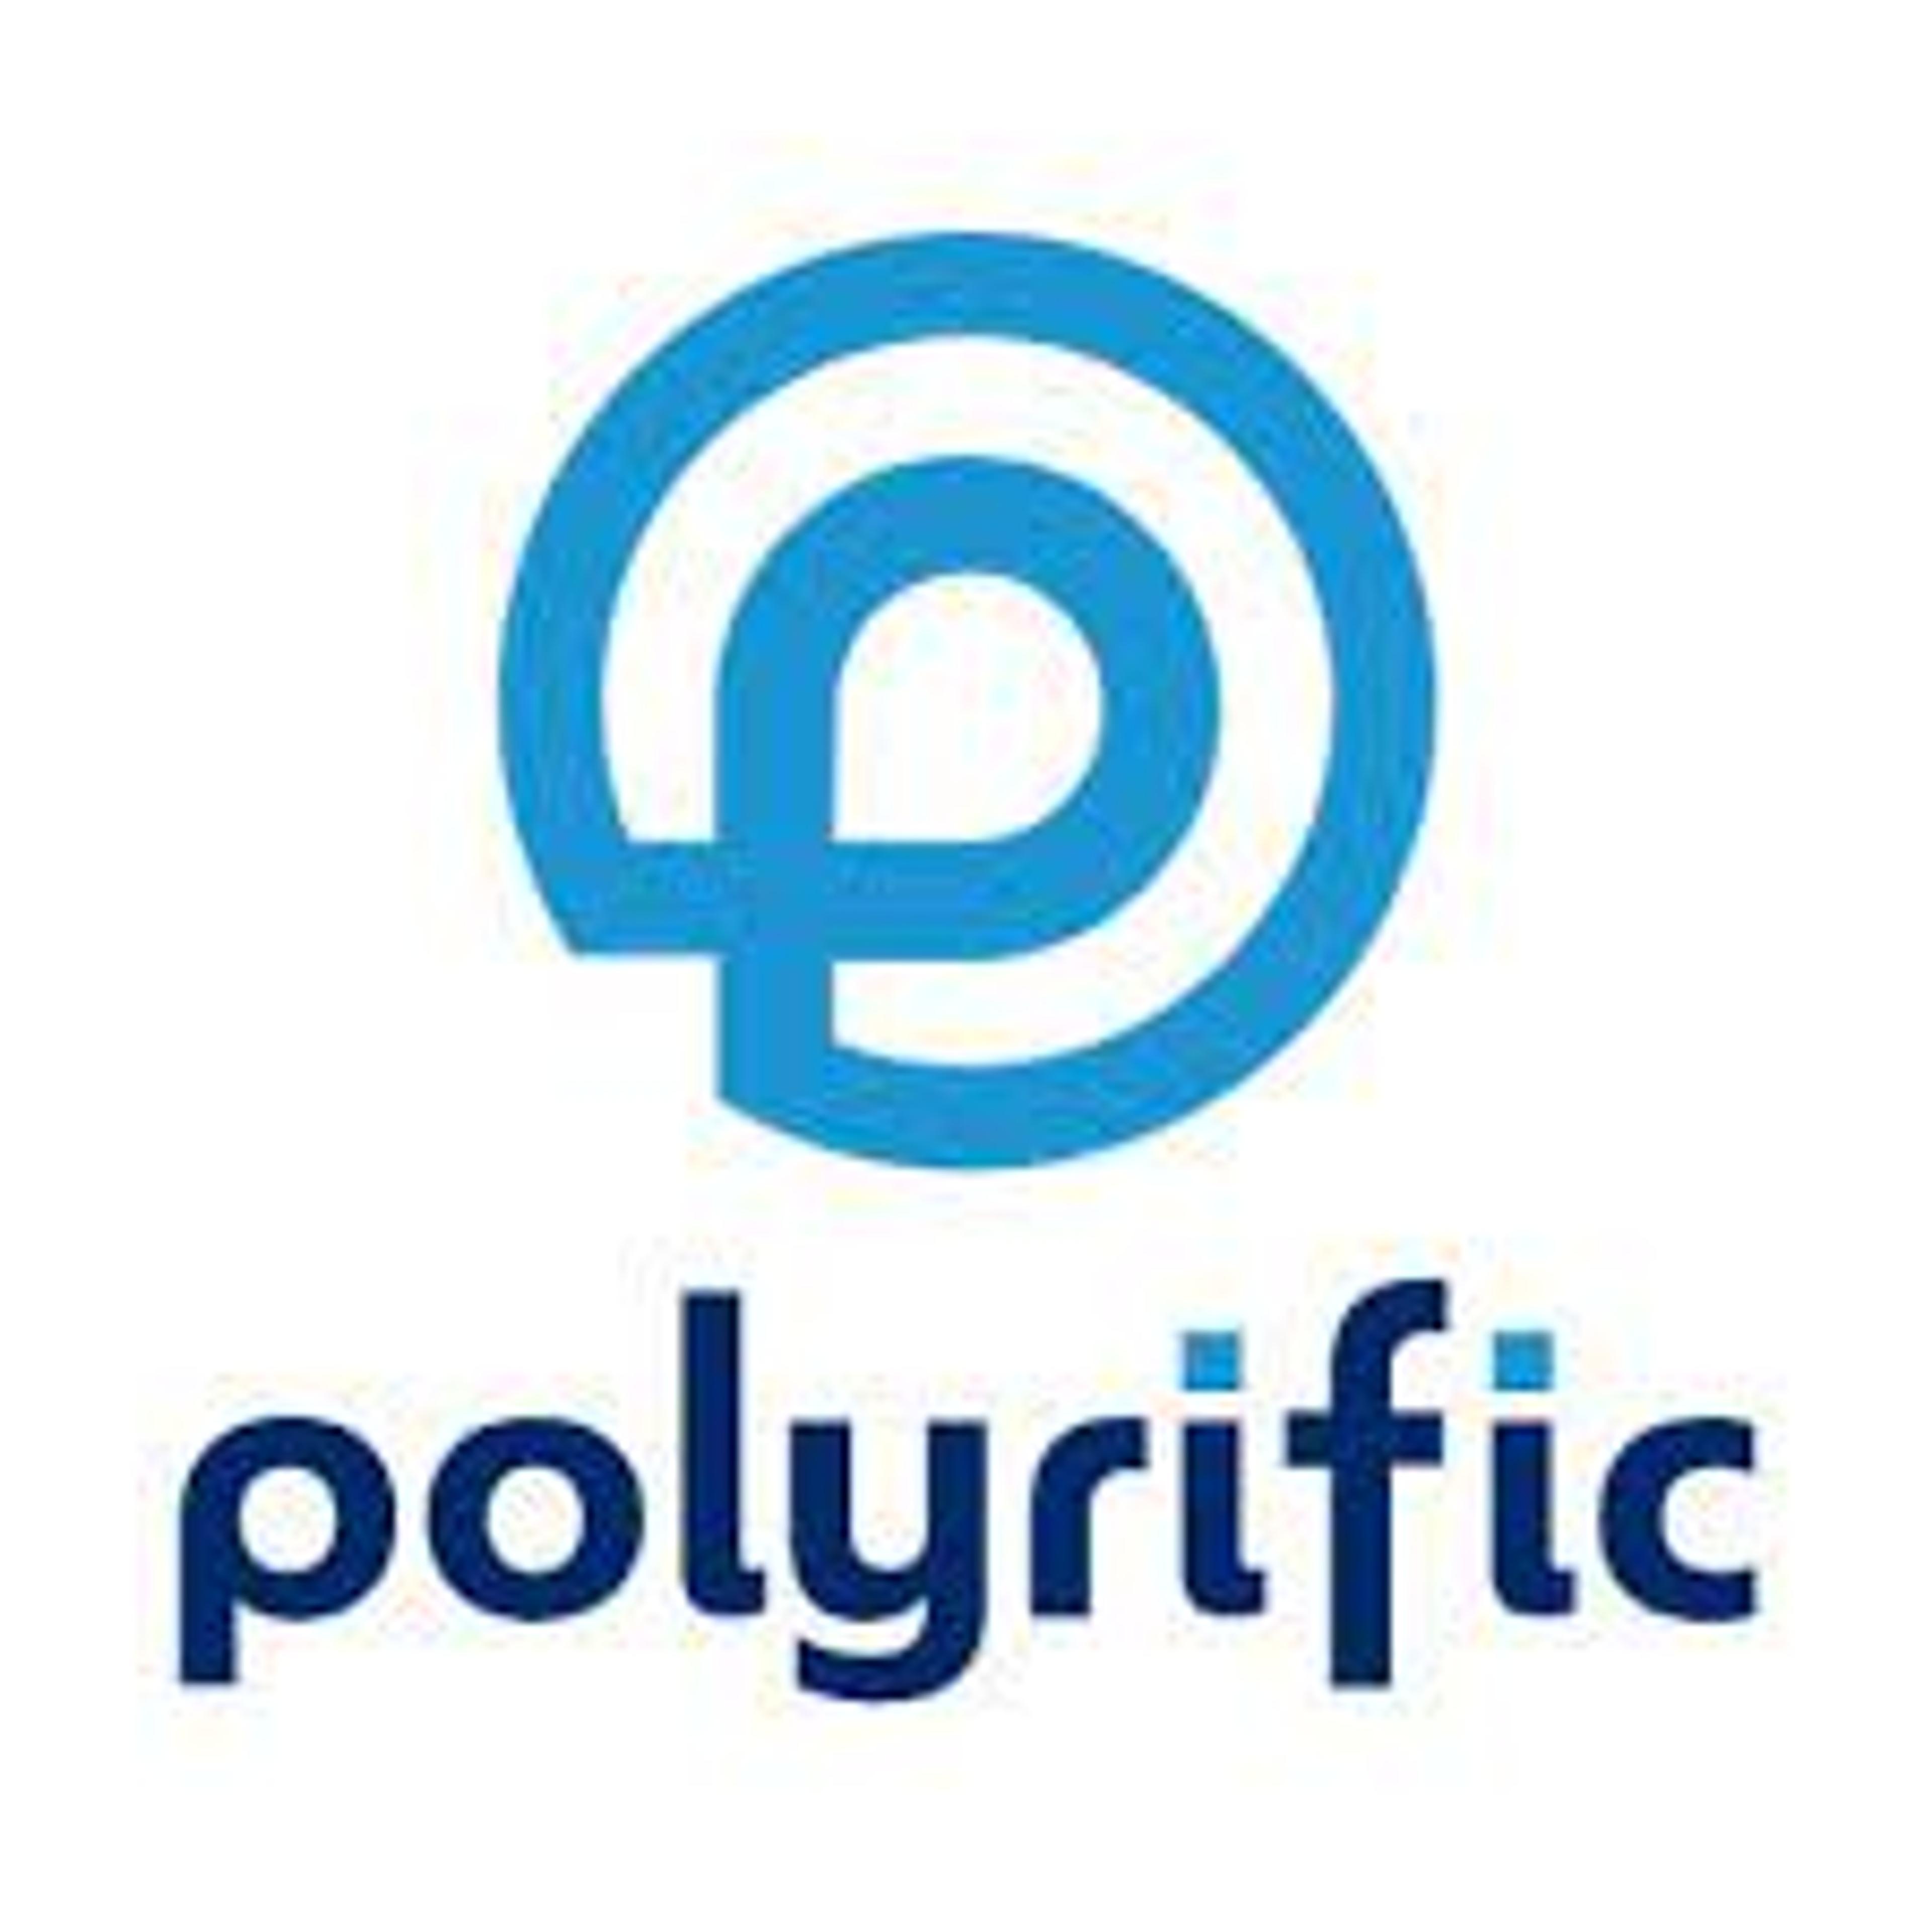 Polyrific, LLC